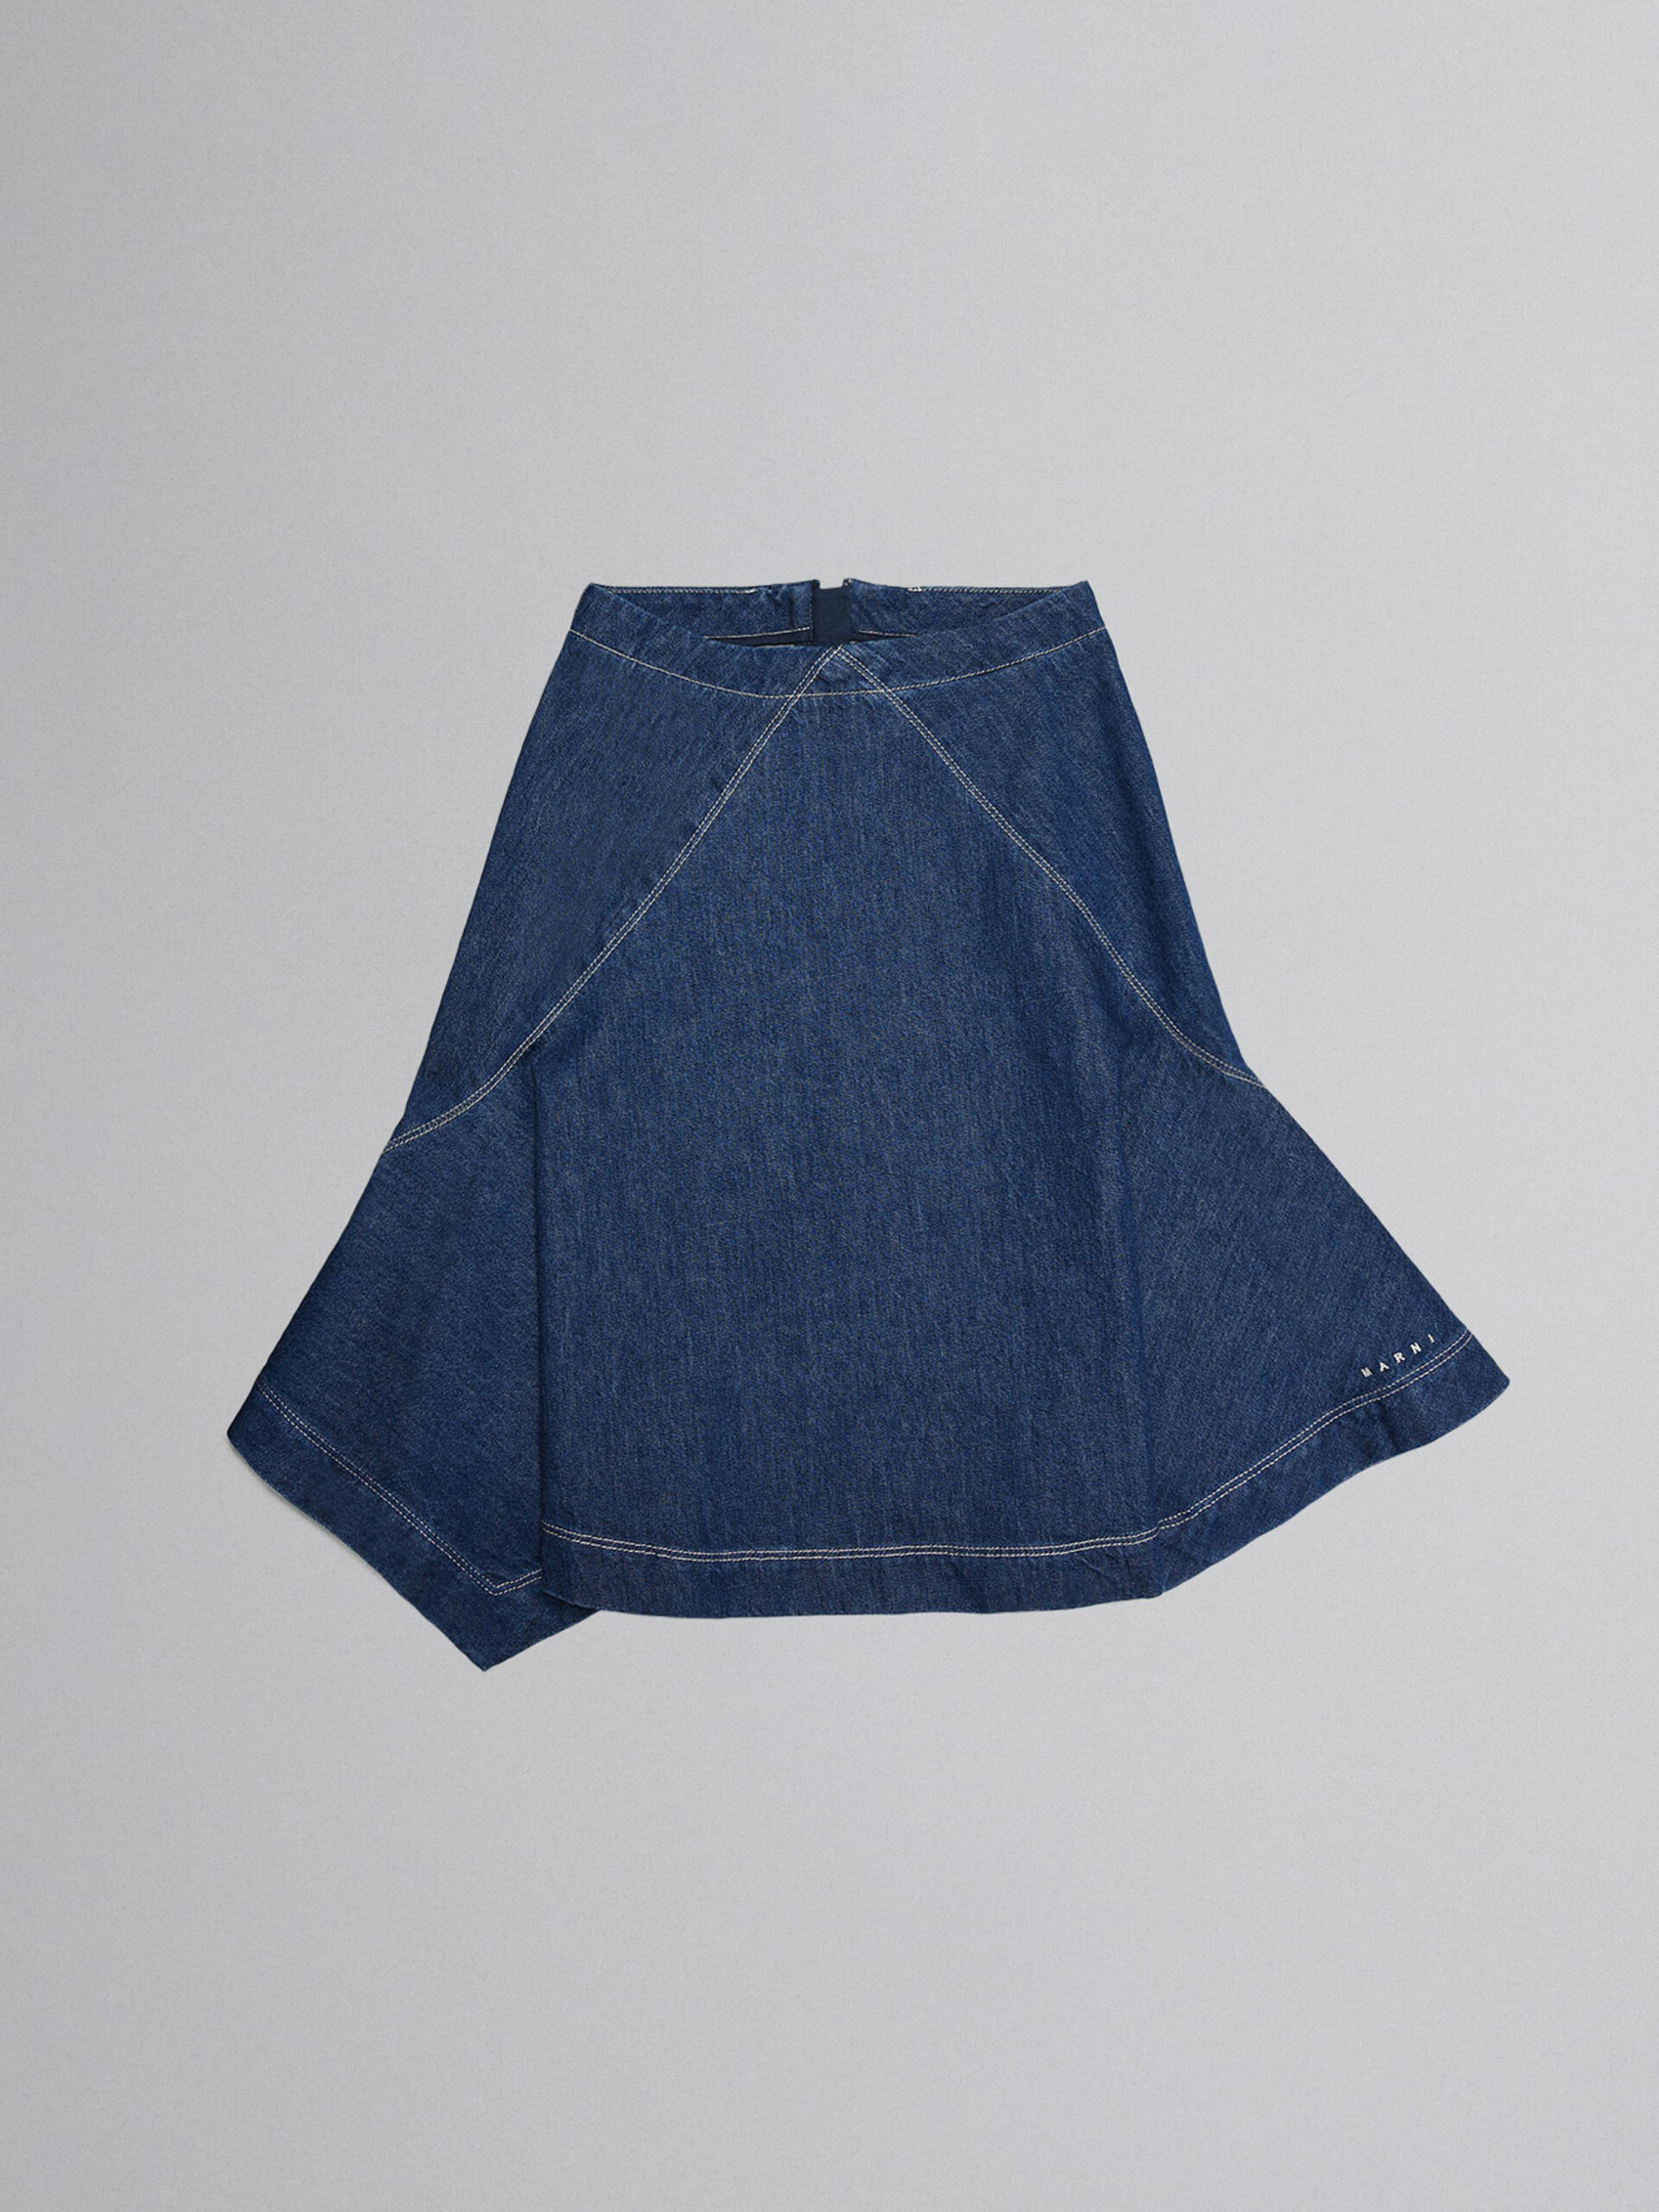 Denim handkerchief skirt - Skirts - Image 1